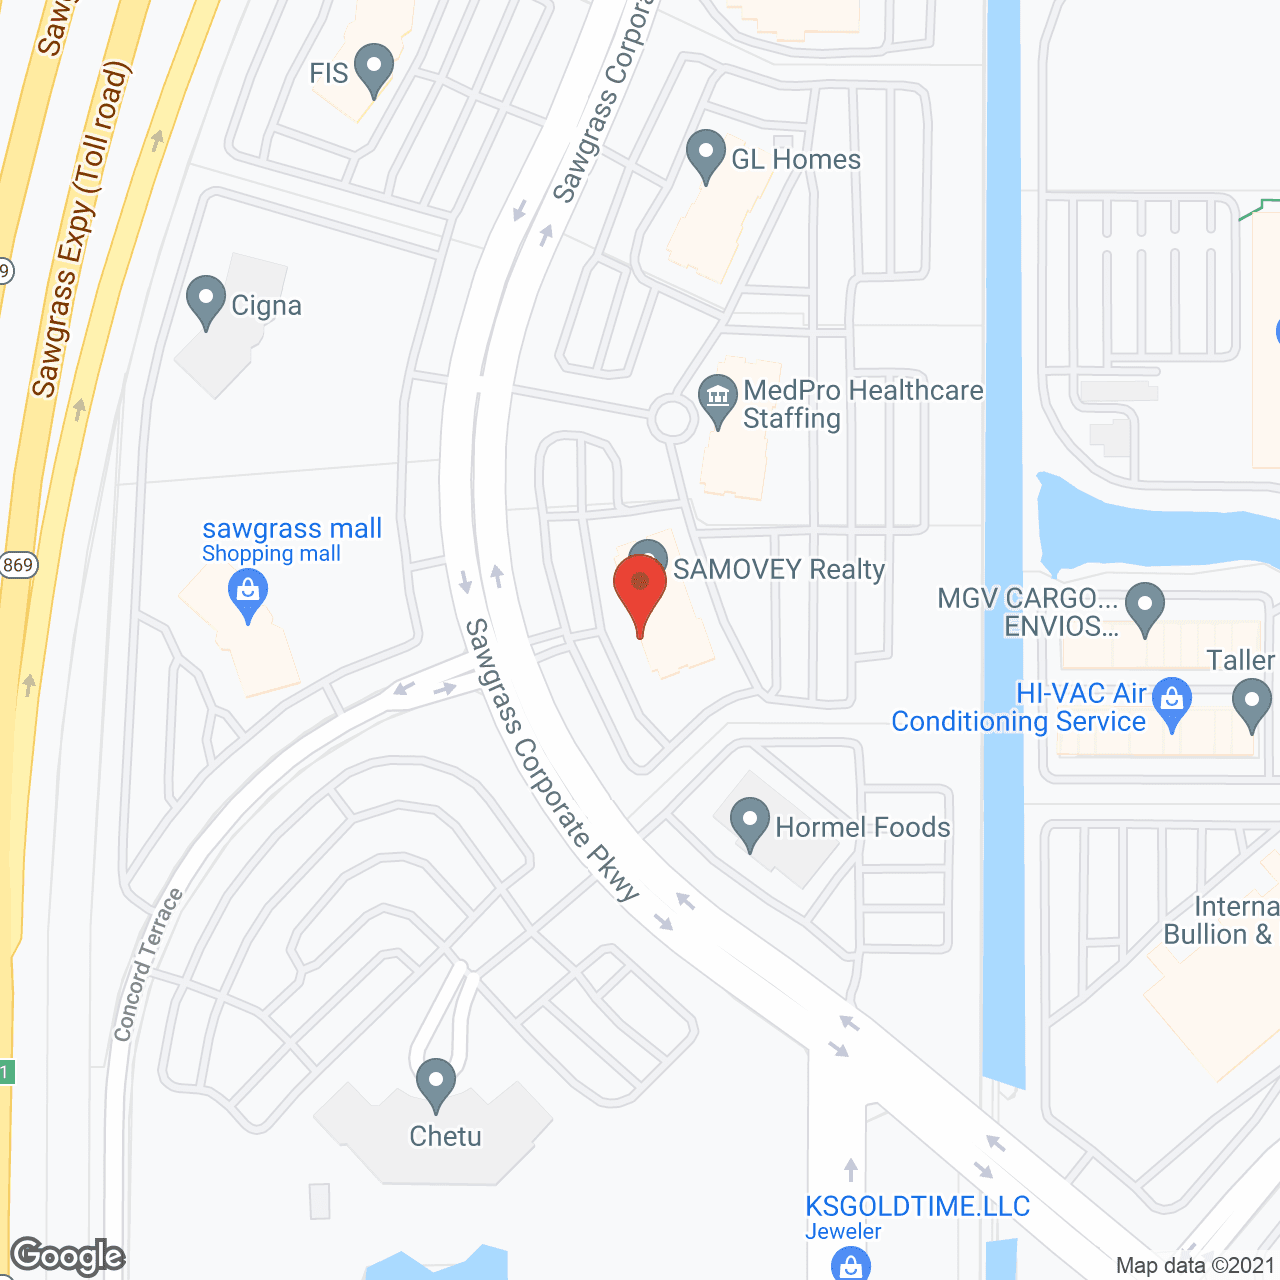 Elder Services - Ft Lauderdale, FL in google map